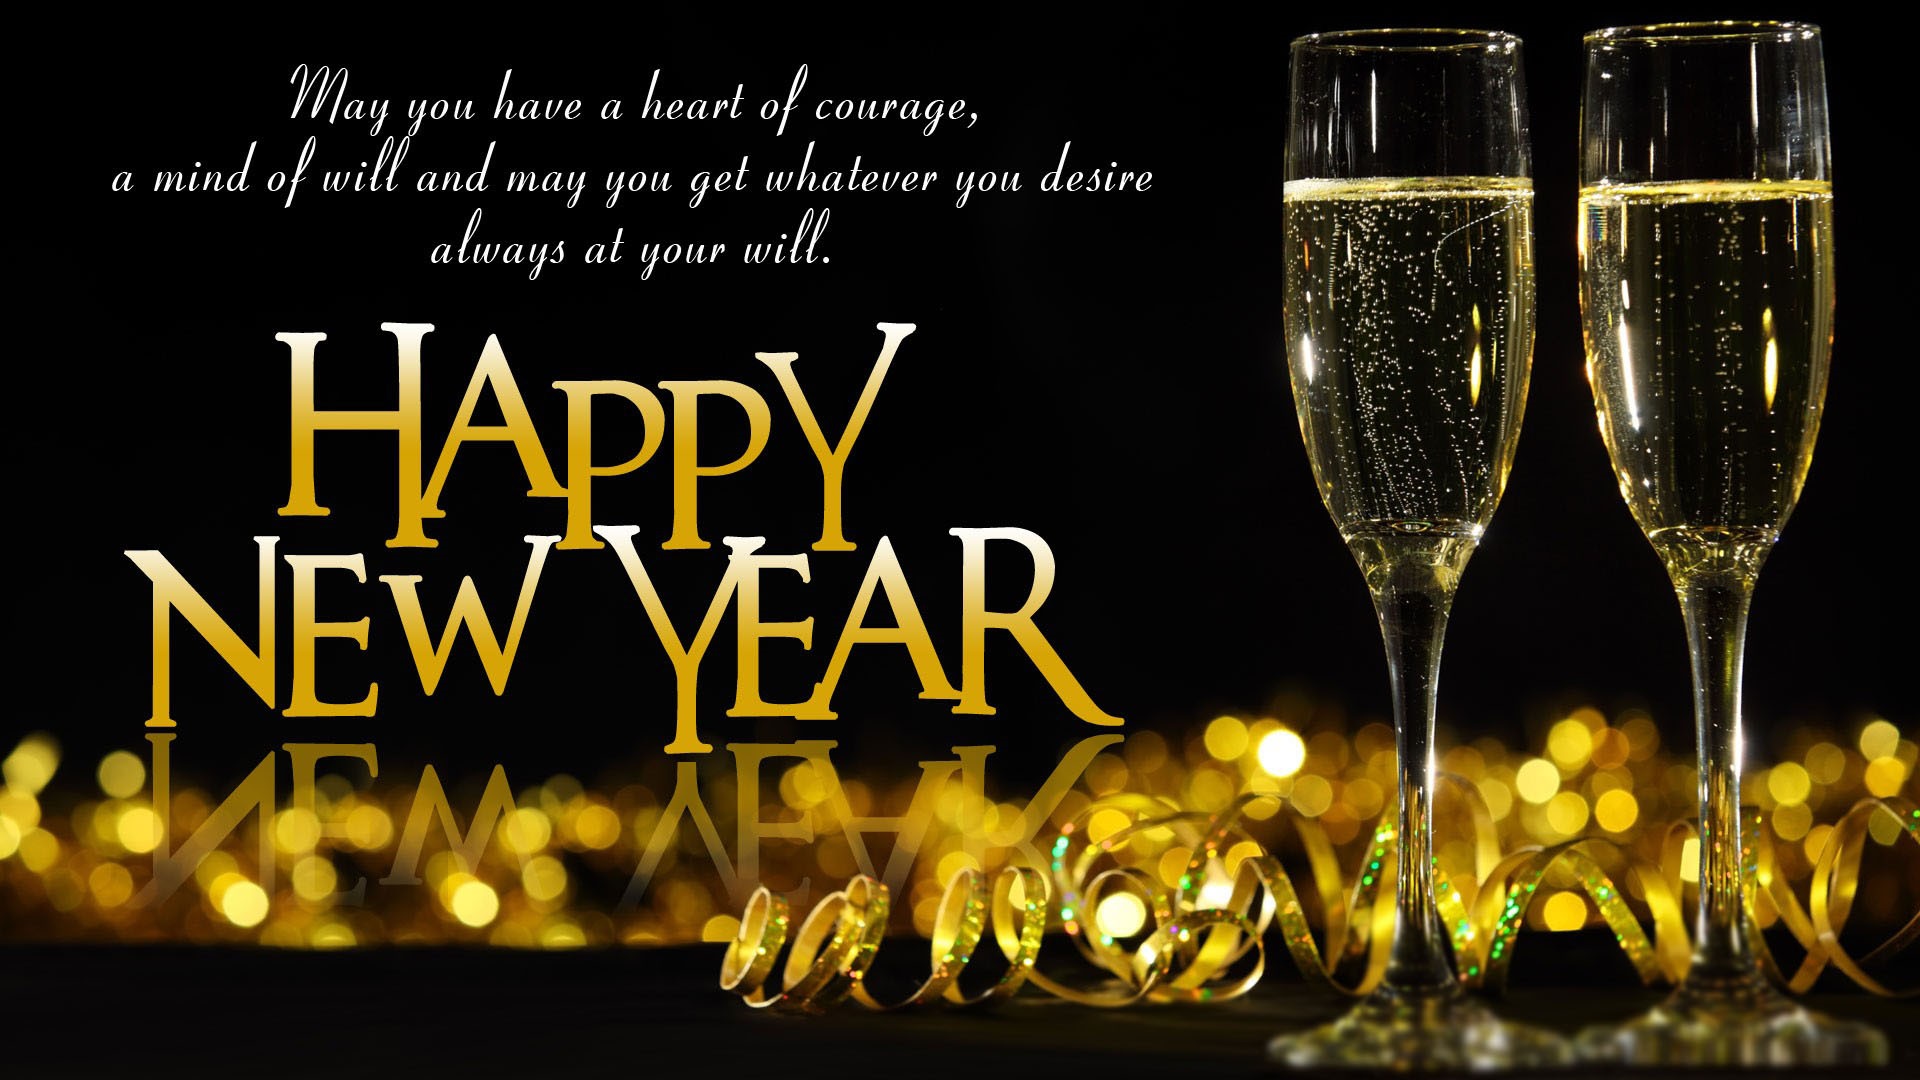 Happy New Year Wallpaper Live, Desktop, Background, - Happy New Year Drink  Quotes - 1920x1080 Wallpaper 